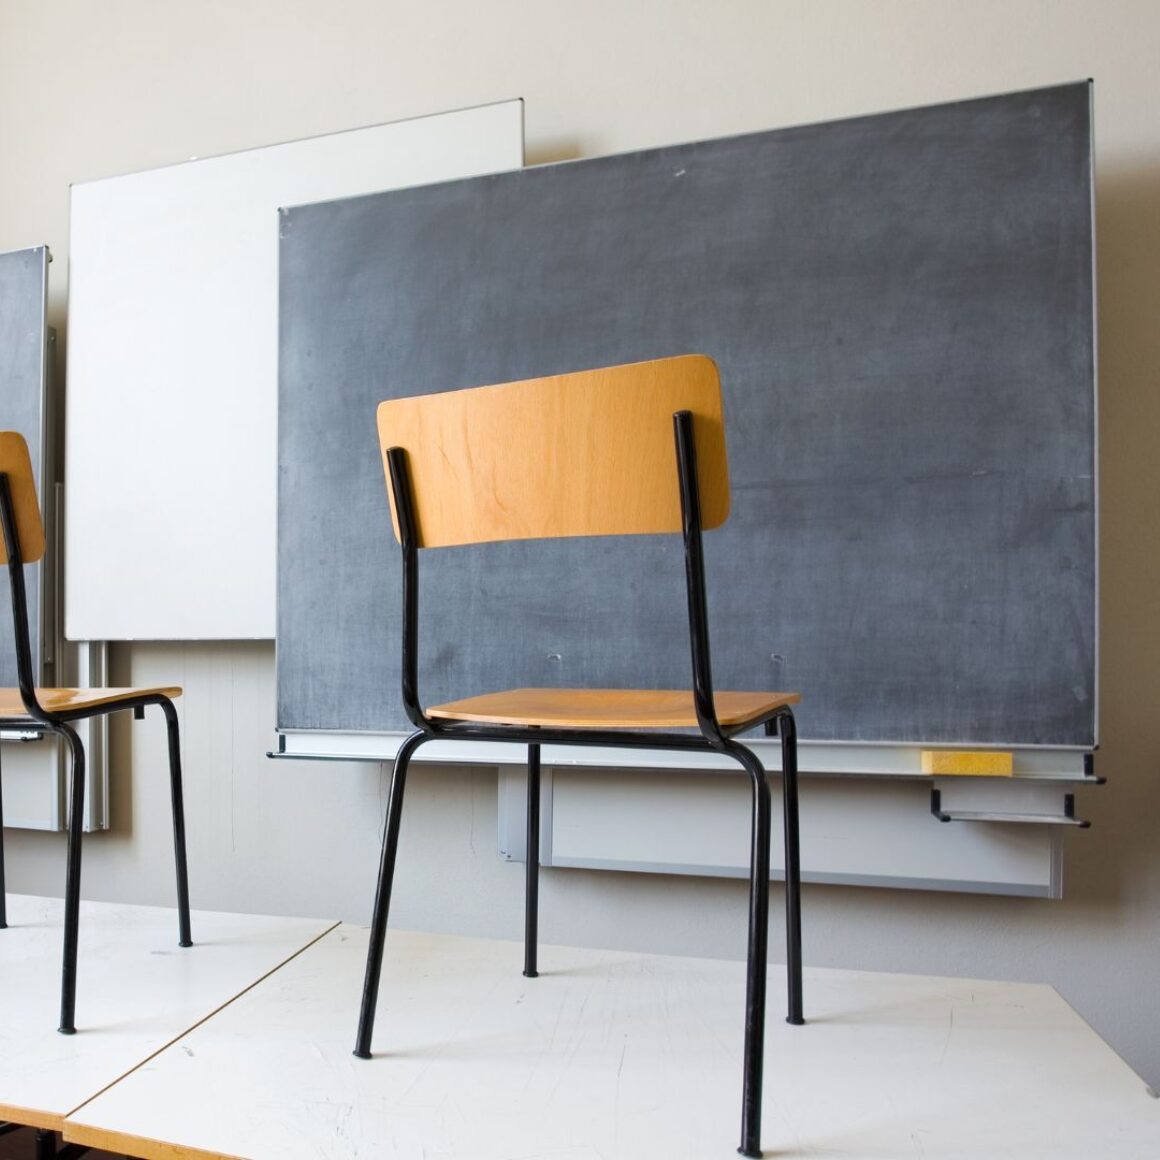 Stühle stehen in einem Klassenzimmer auf den Tischen